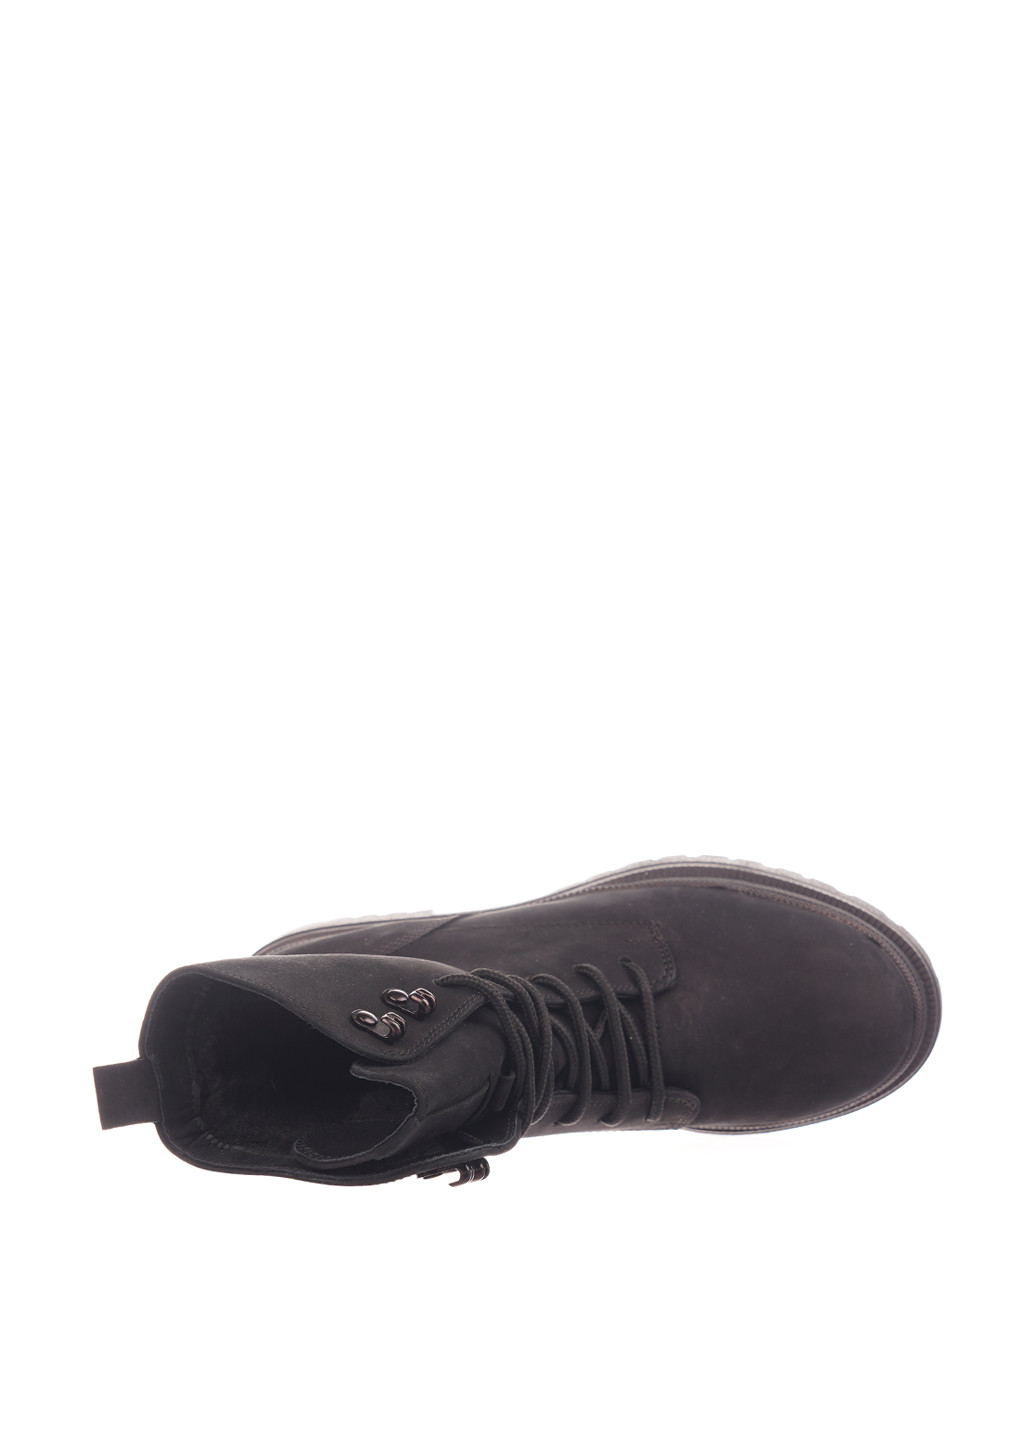 Зимние ботинки Camalini со шнуровкой из натурального нубука